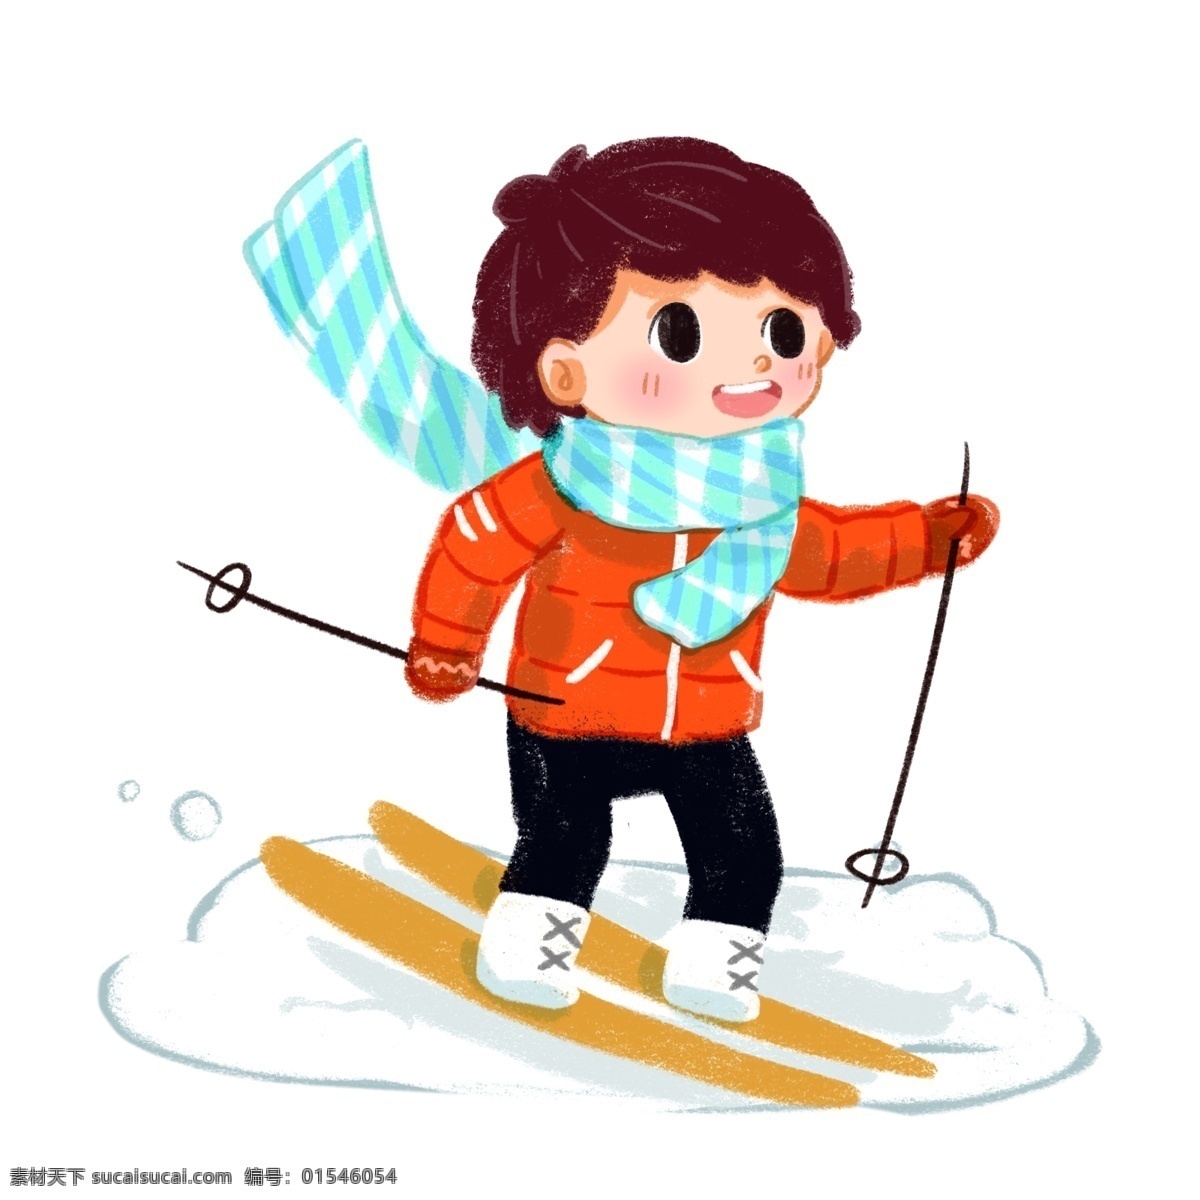 冬日 里 滑雪场 滑雪 阳光 男孩 冬天 冬季 雪 雪花 暖色调 可爱 卡通风 蜡笔 清新 壁纸 装饰 插画